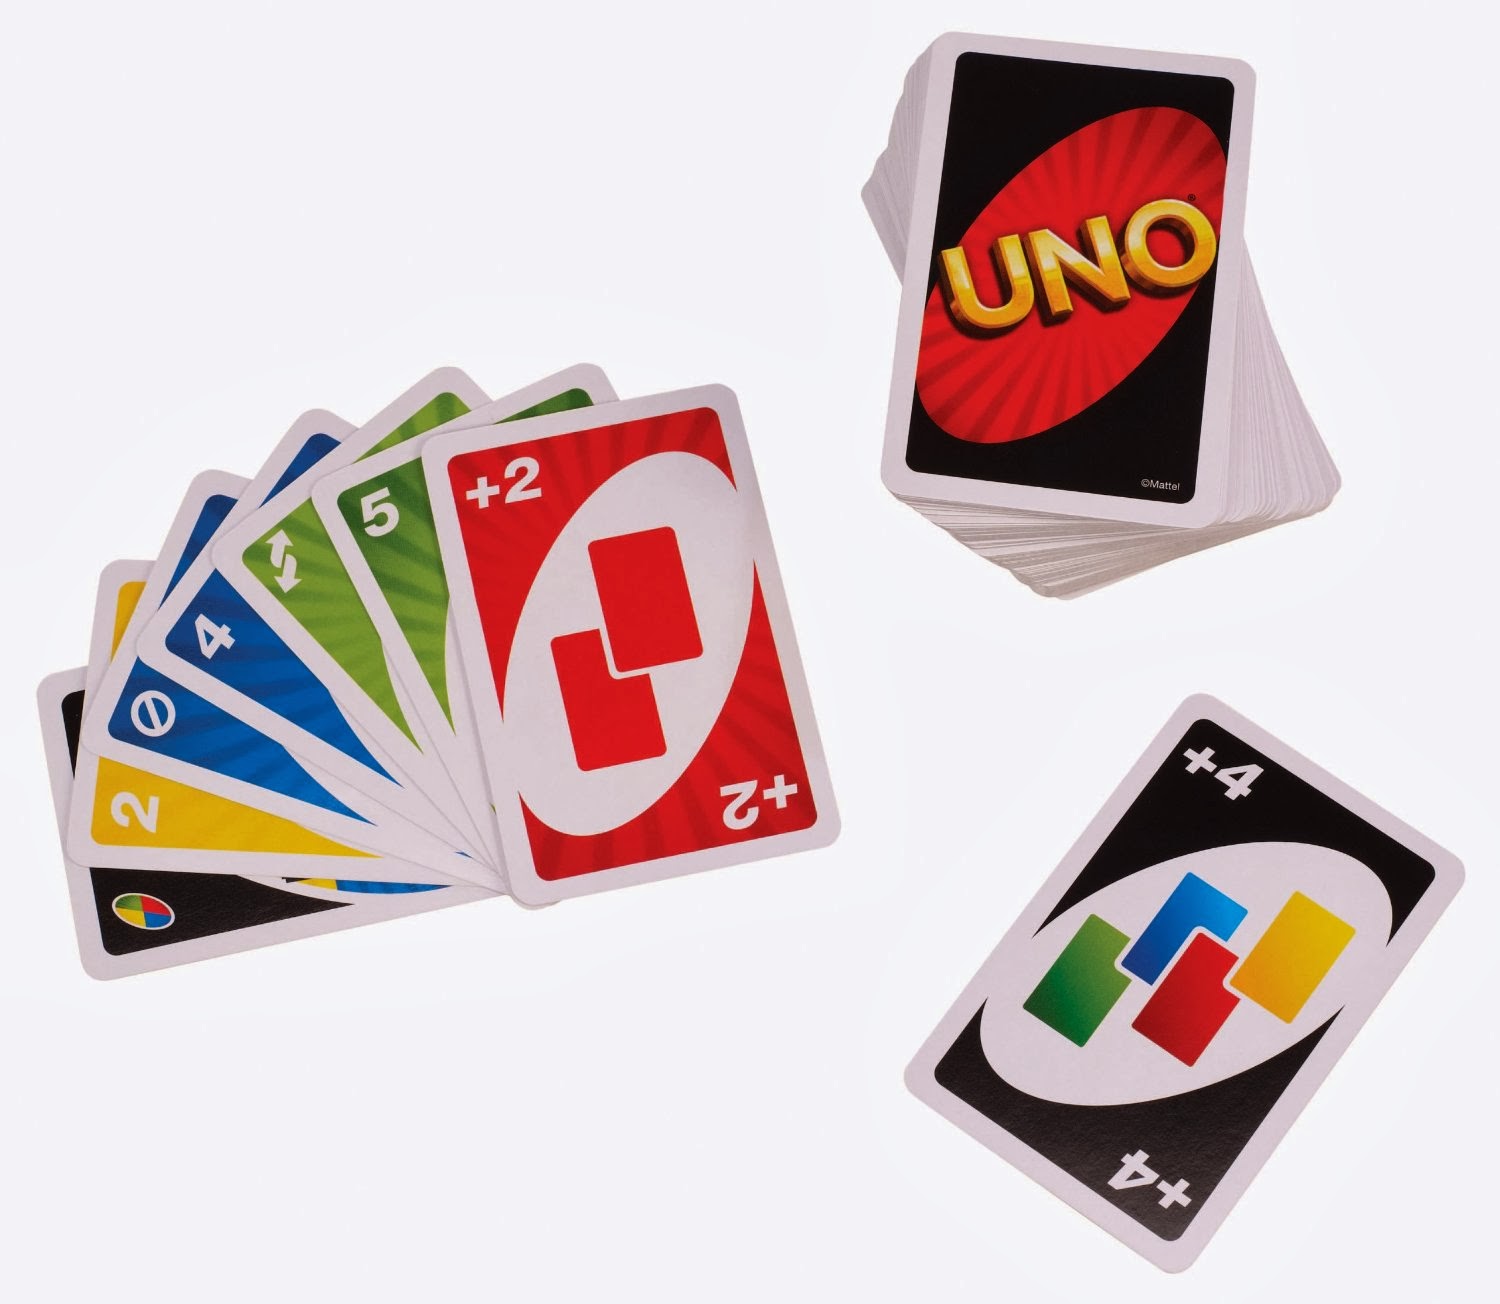 Unos Board Game